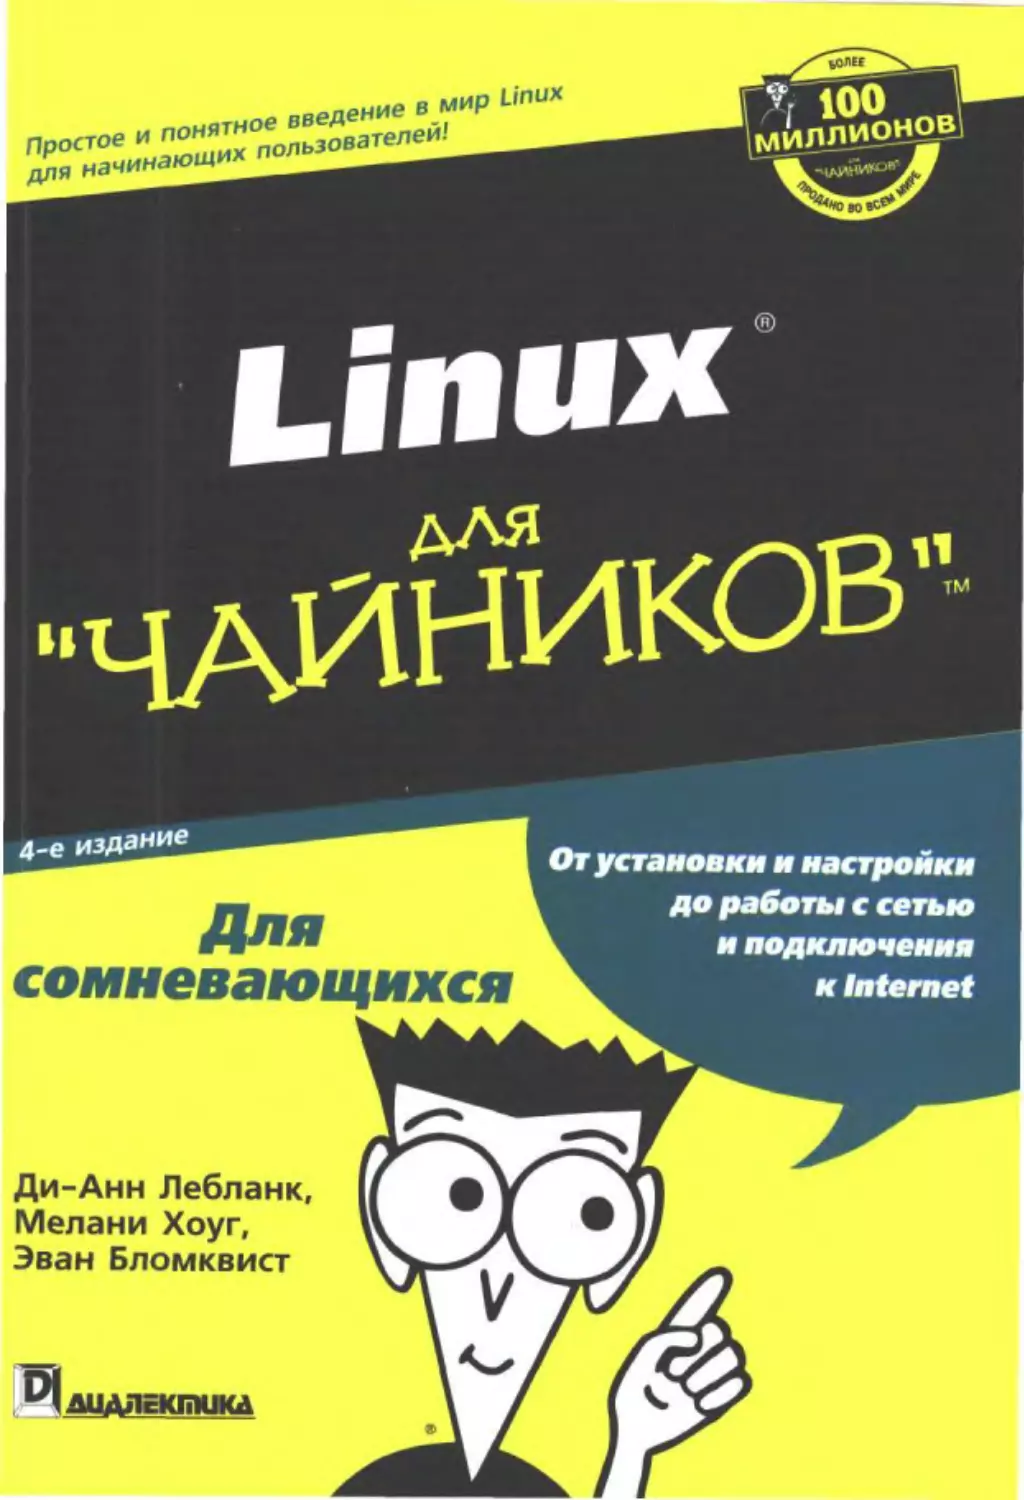 Linux для "чайников", 4-е издание.